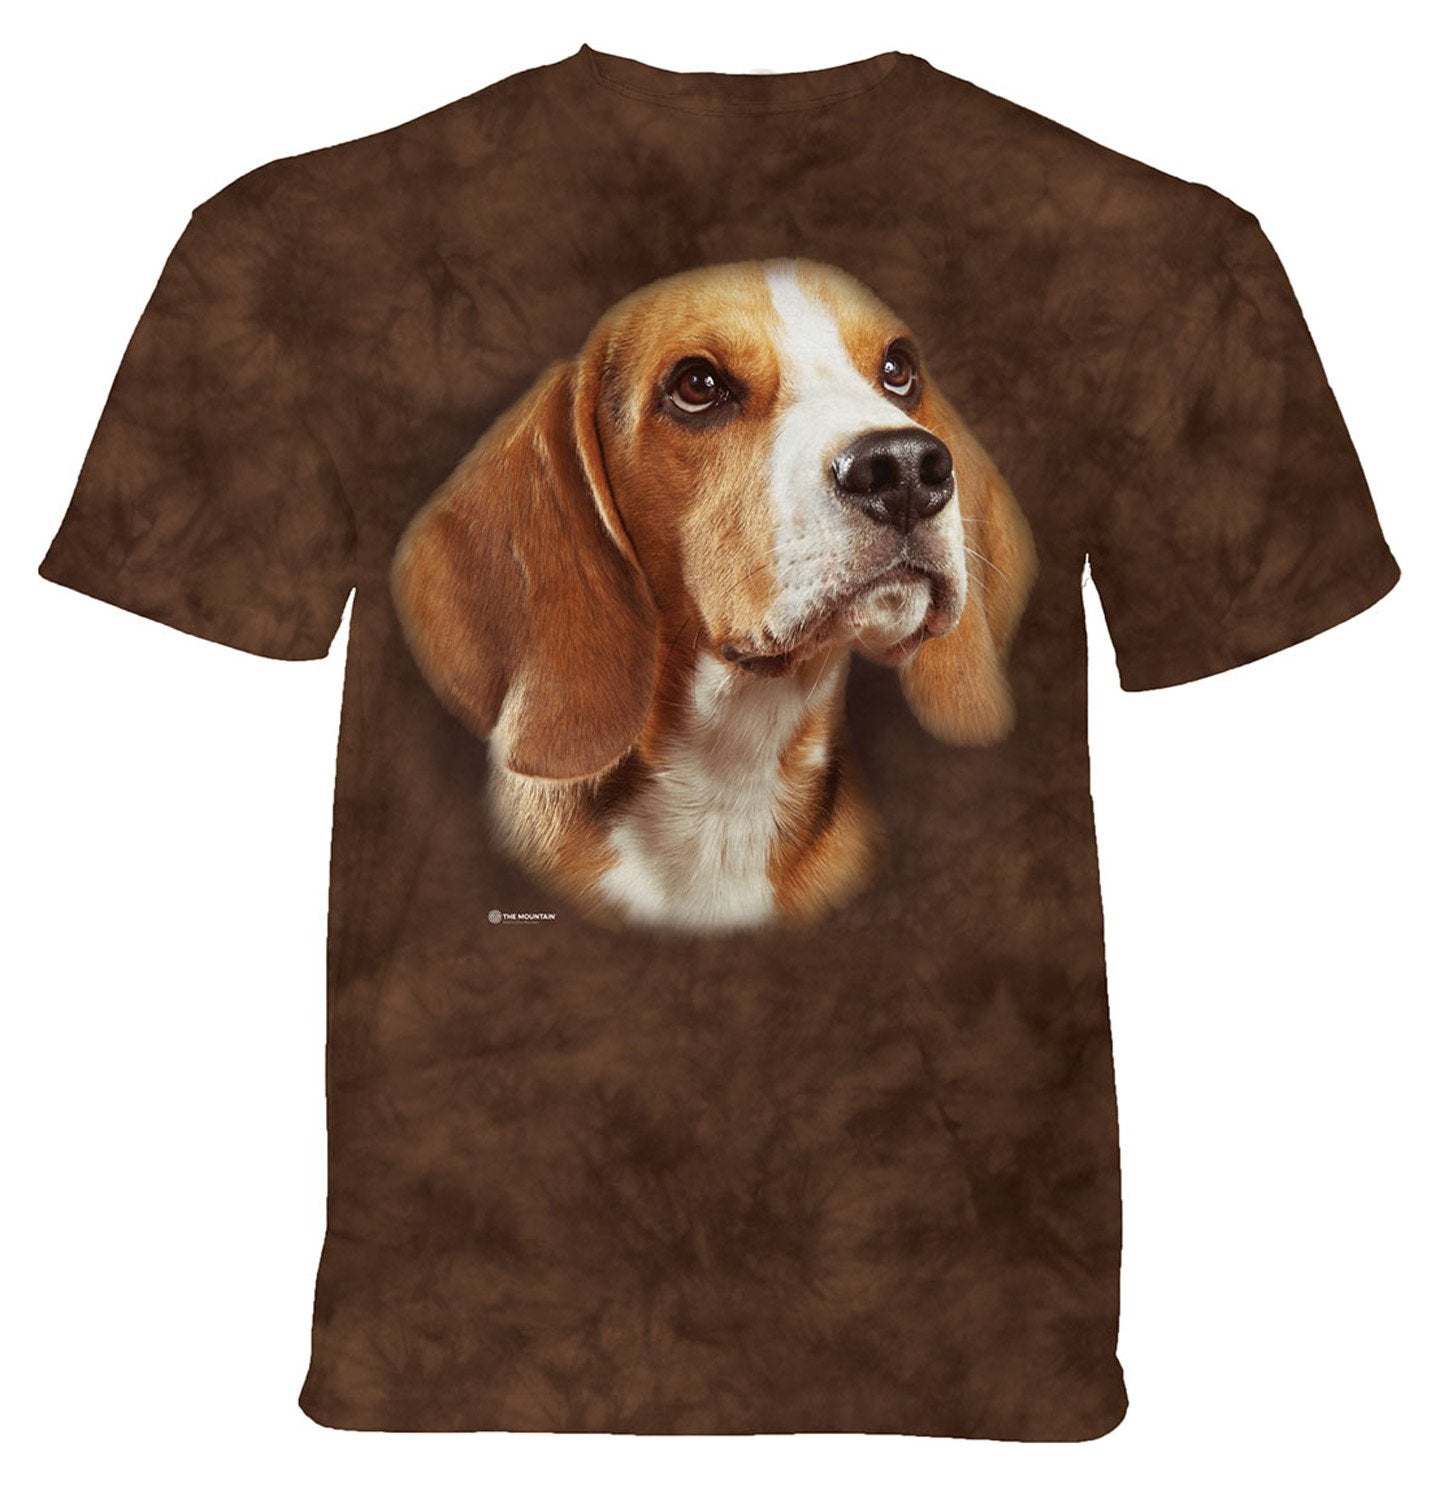 The Mountain - Beagle Portrait - Adult Unisex T-Shirt